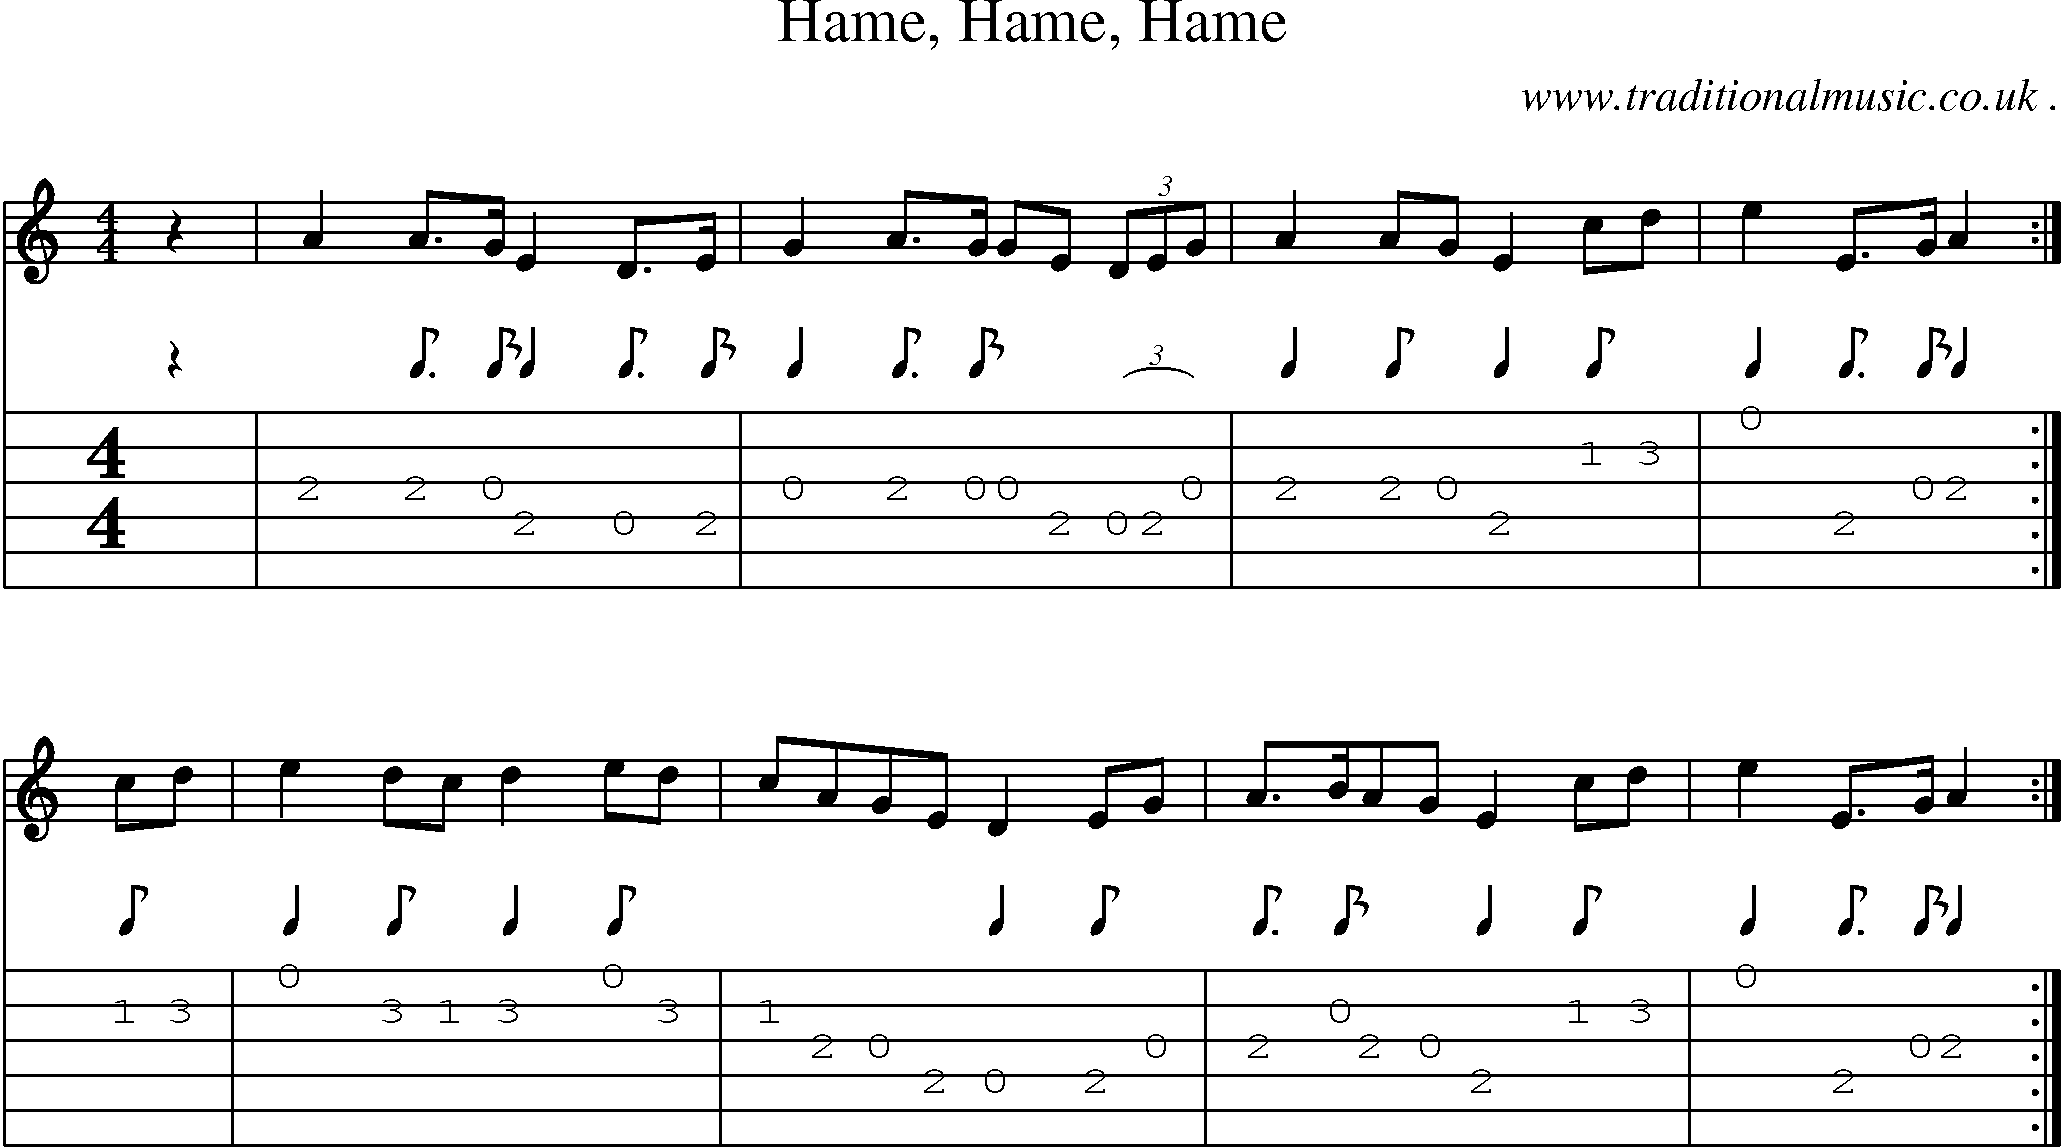 Sheet-music  score, Chords and Guitar Tabs for Hame Hame Hame